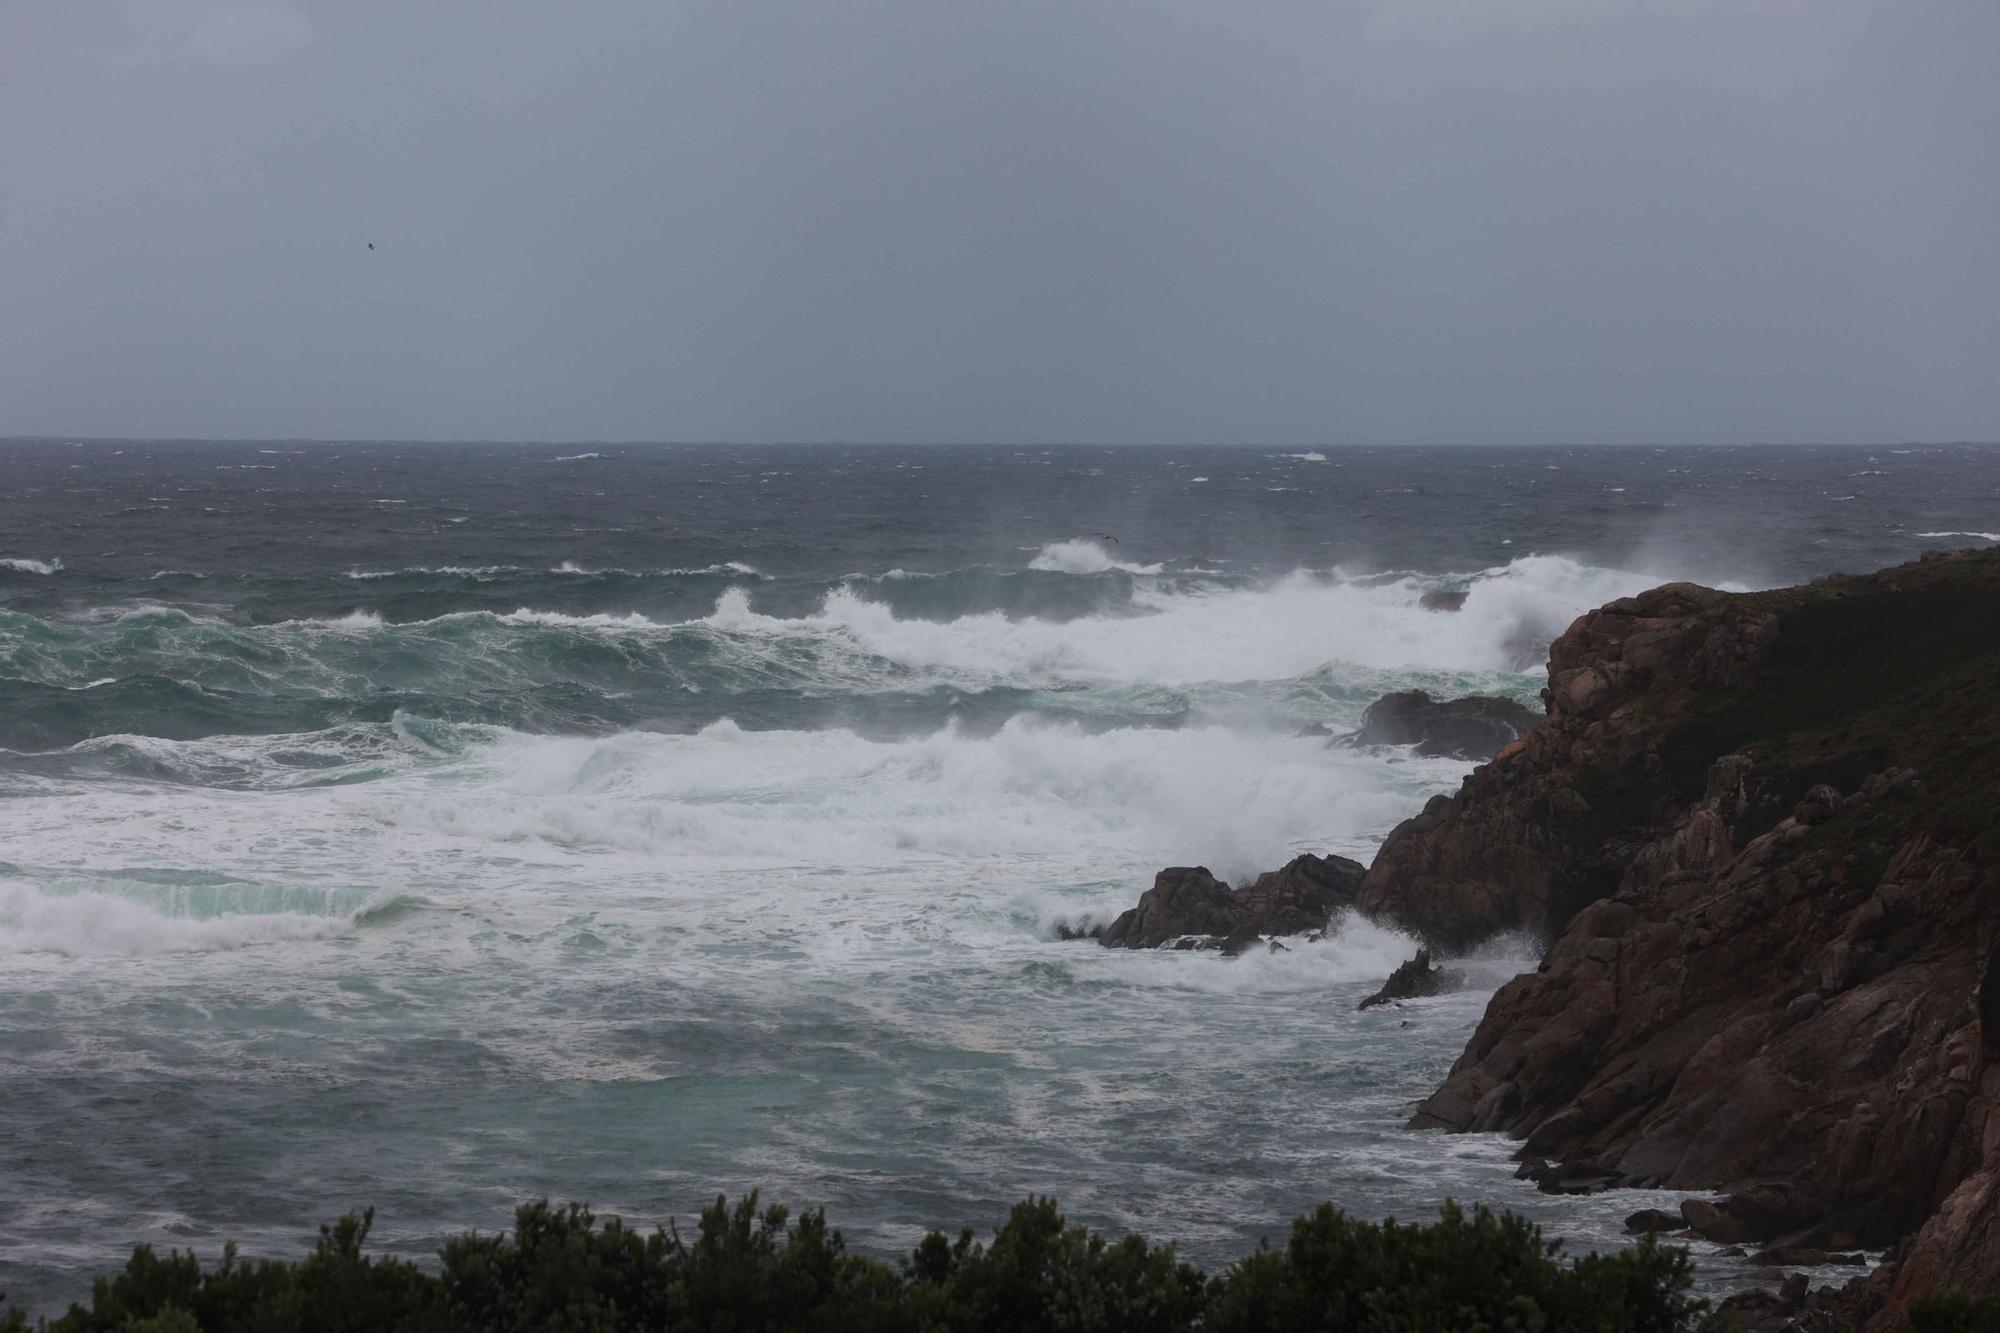 Alerta naranja en A Coruña por temporal costero en todo el litoral gallego